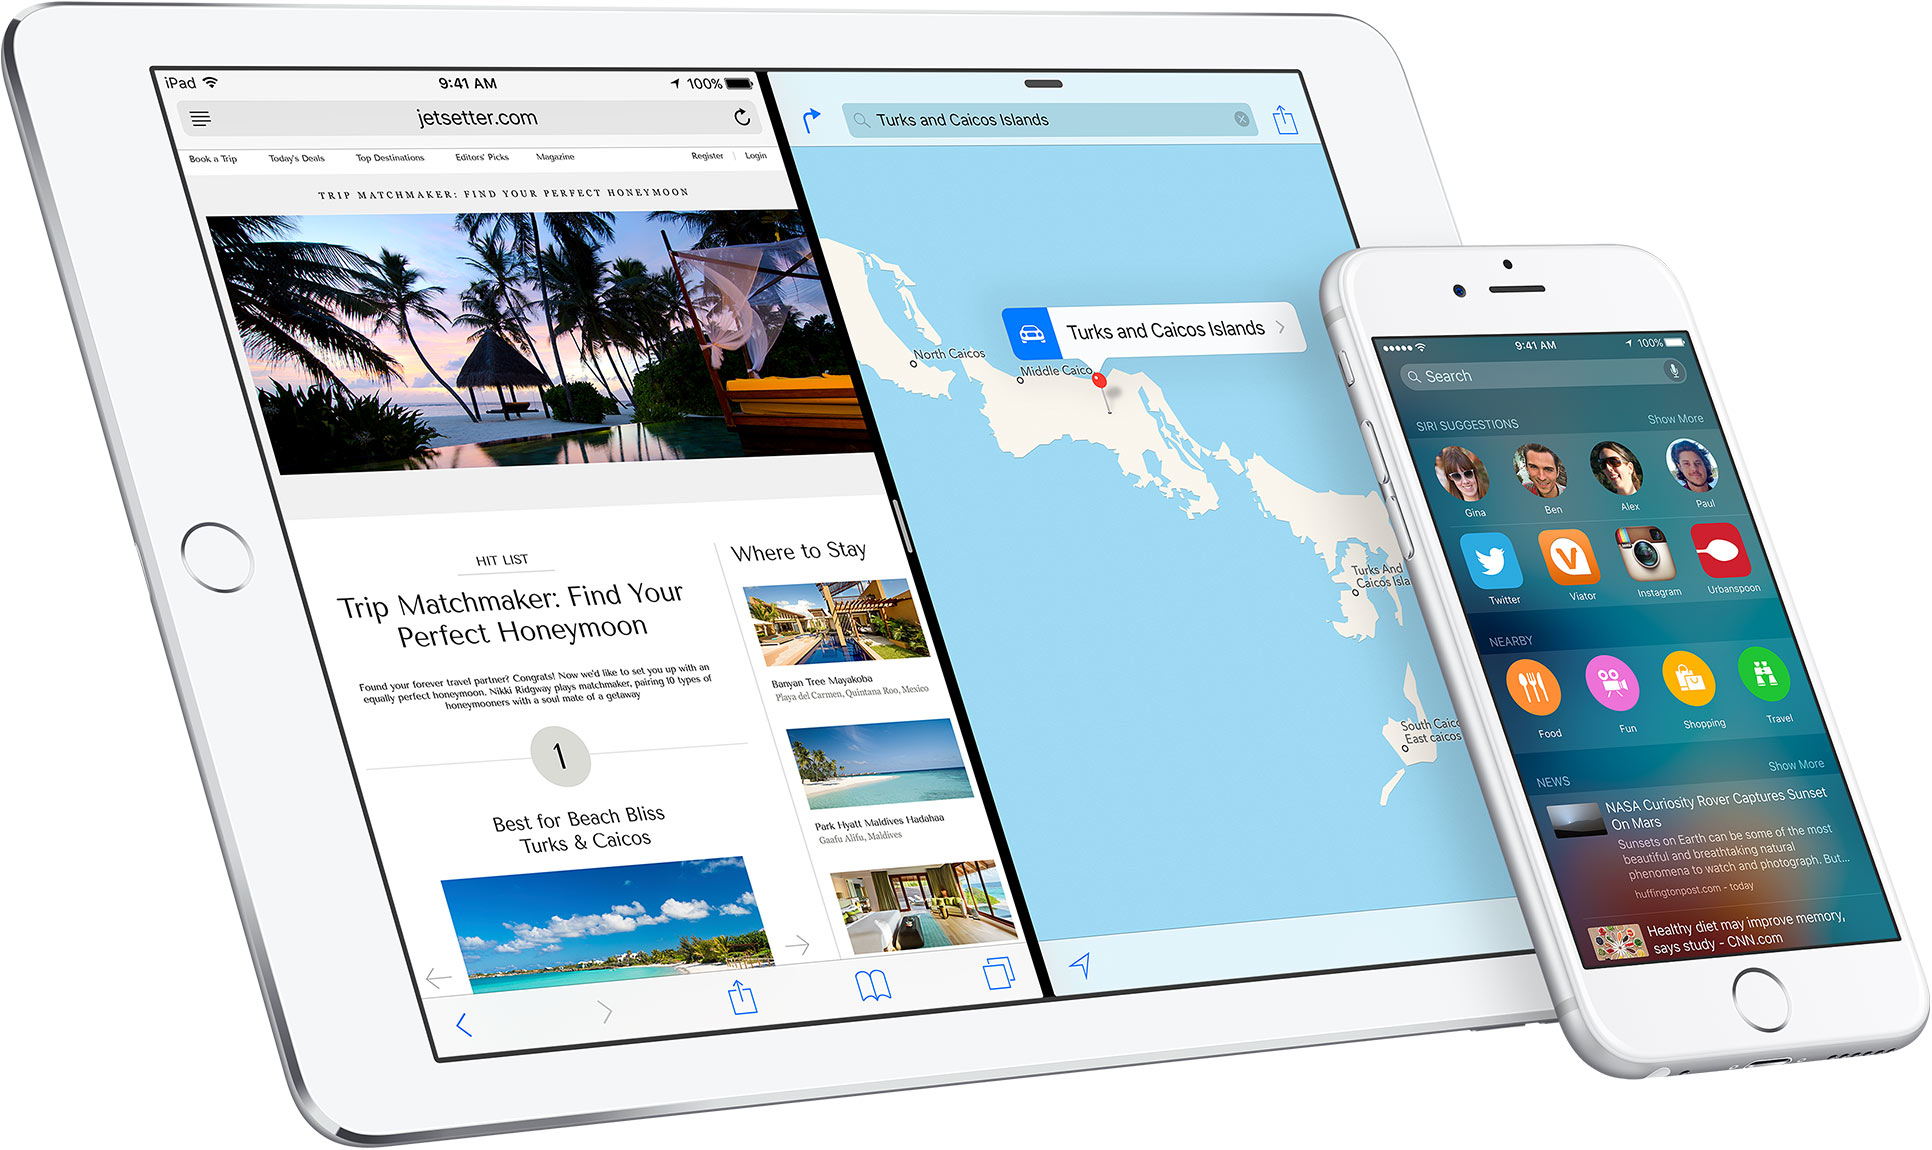 iPad Split Screen with iPhone